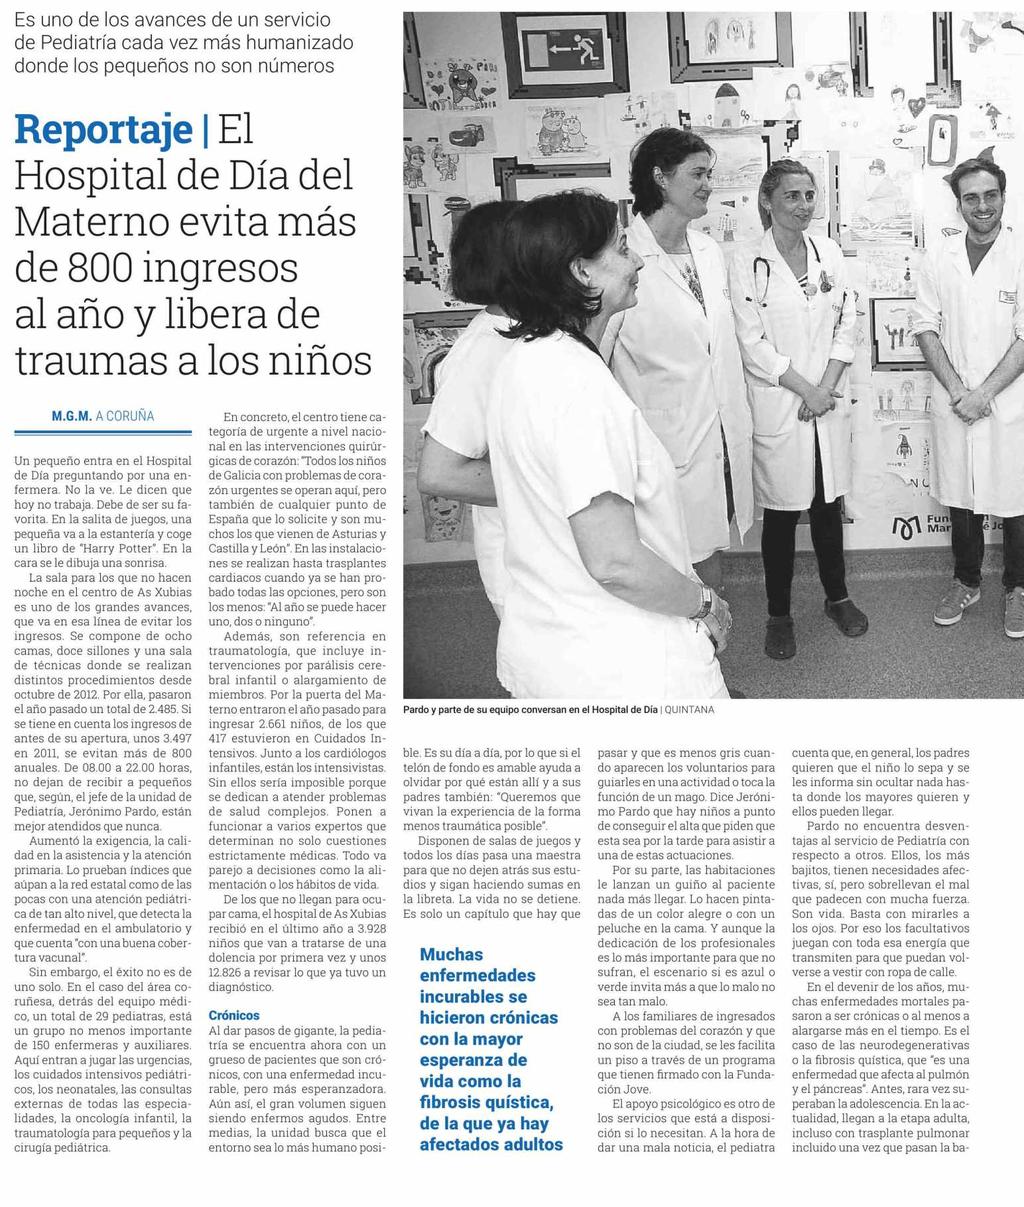 Diario de Bergantiños Lugo Prensa: Tirada: Difusión: Diaria 250 Ejemplares 250 Ejemplares 17/06/18 Sección: REGIONAL Valor: